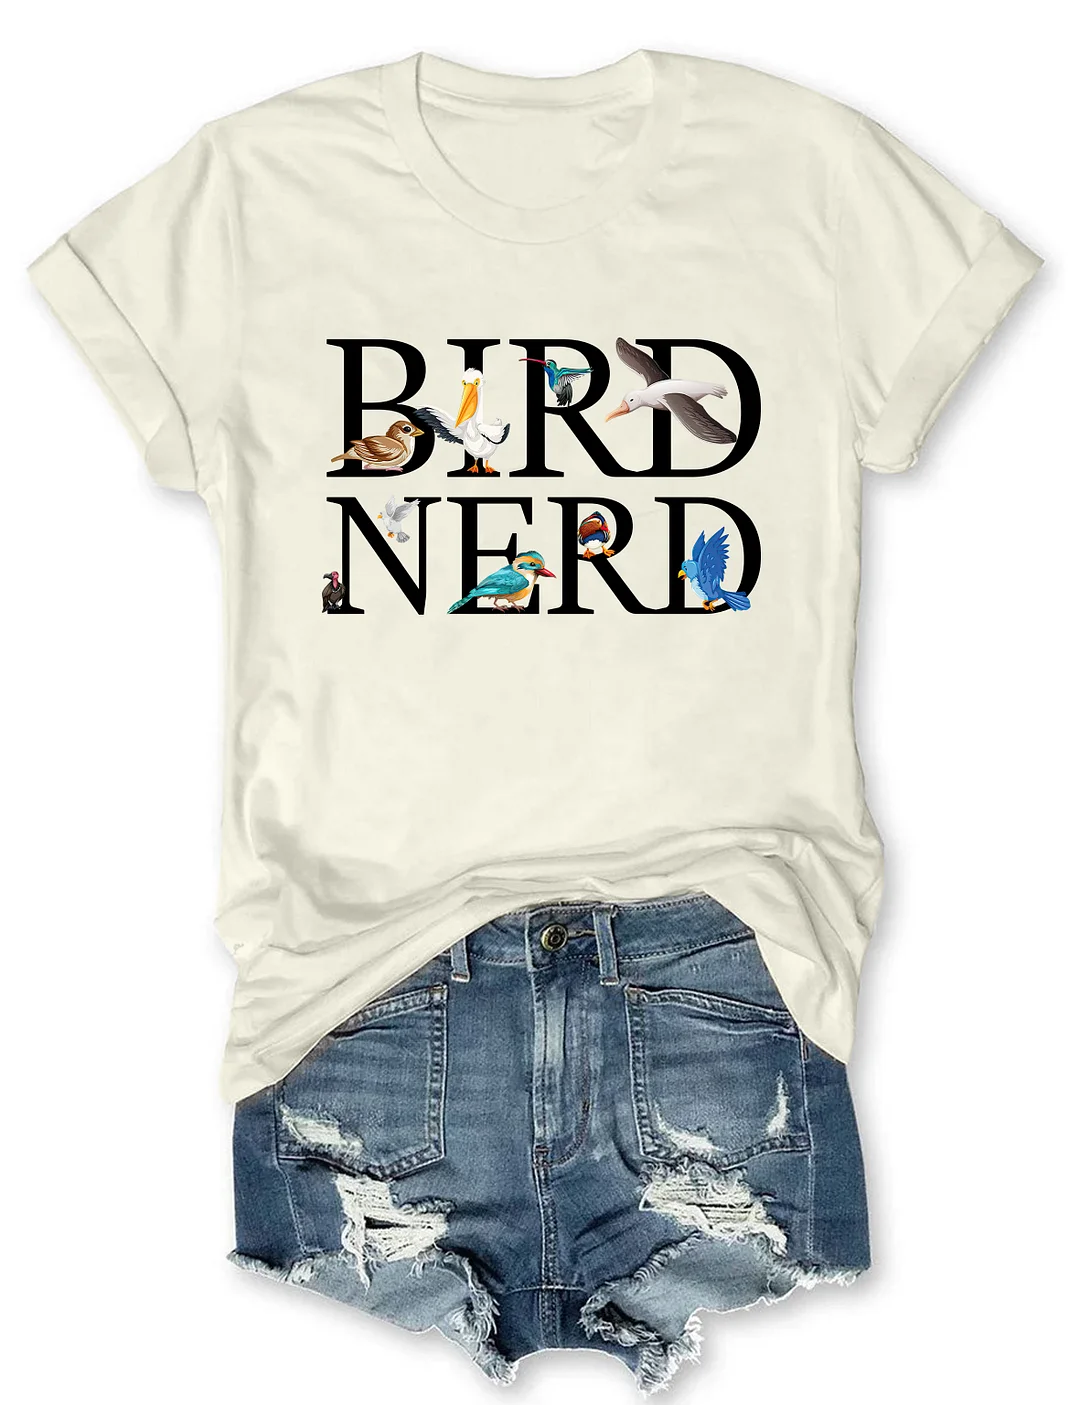 Bird Nerd T-shirt